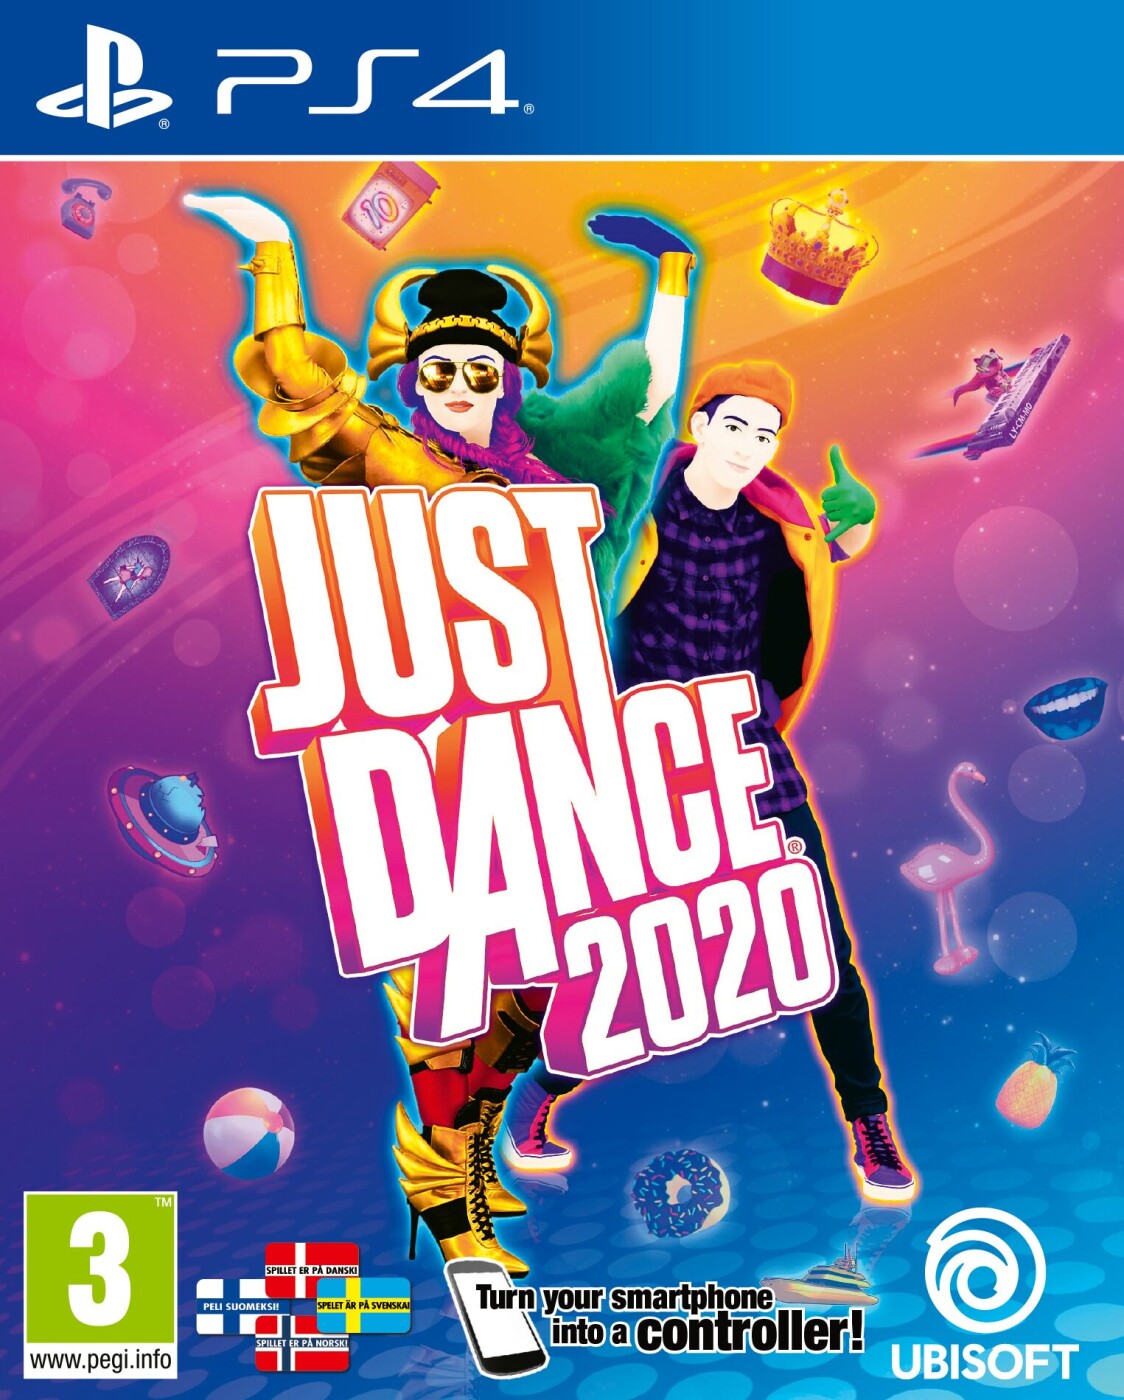 Just Dance 2020 - ps4 → Køb billigt her -